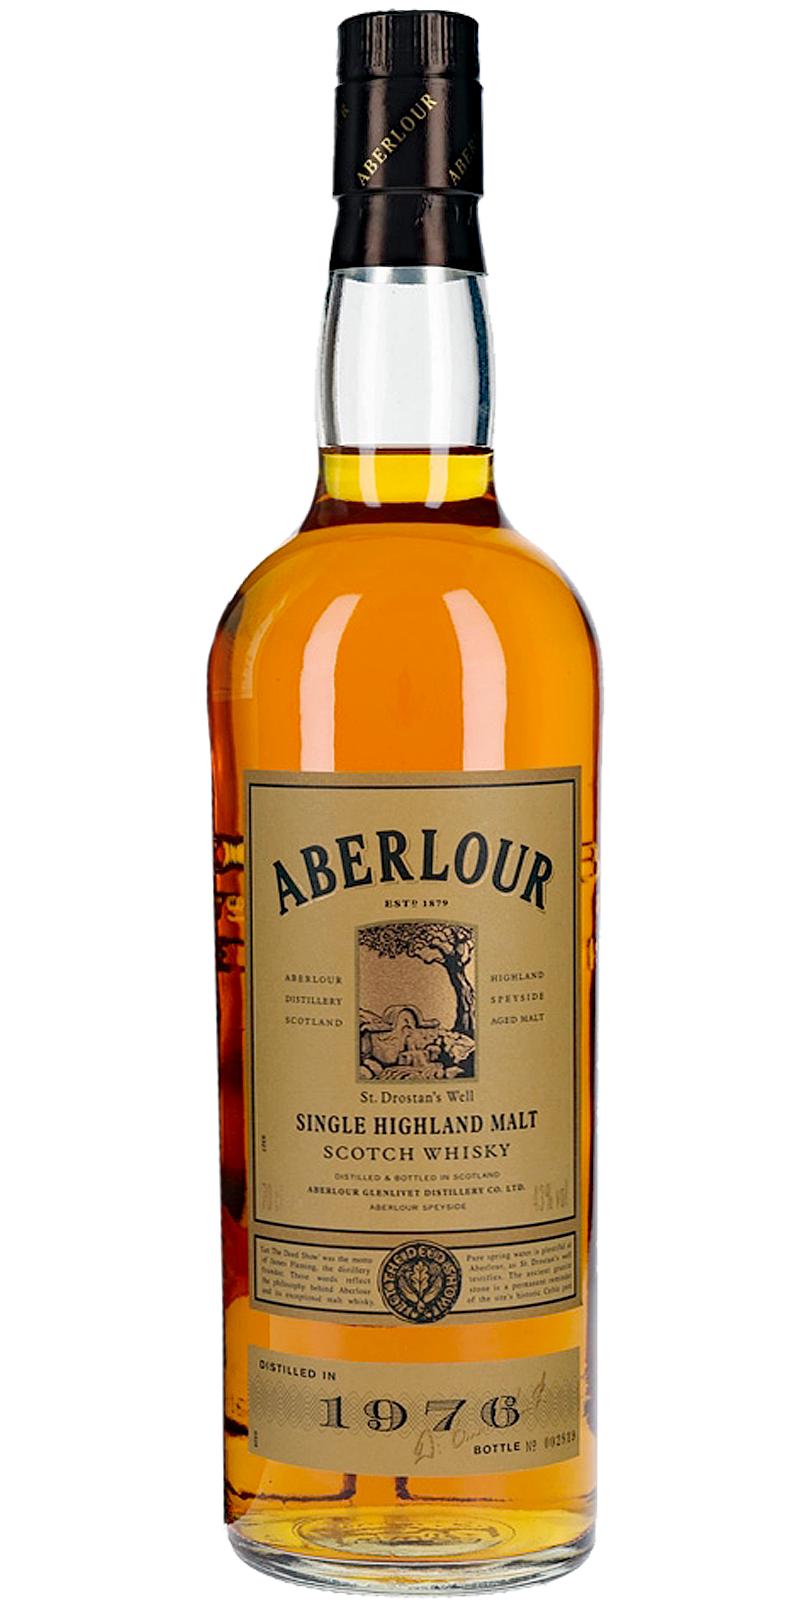 whisky aberlour a'bunadh batch 74 cl.70